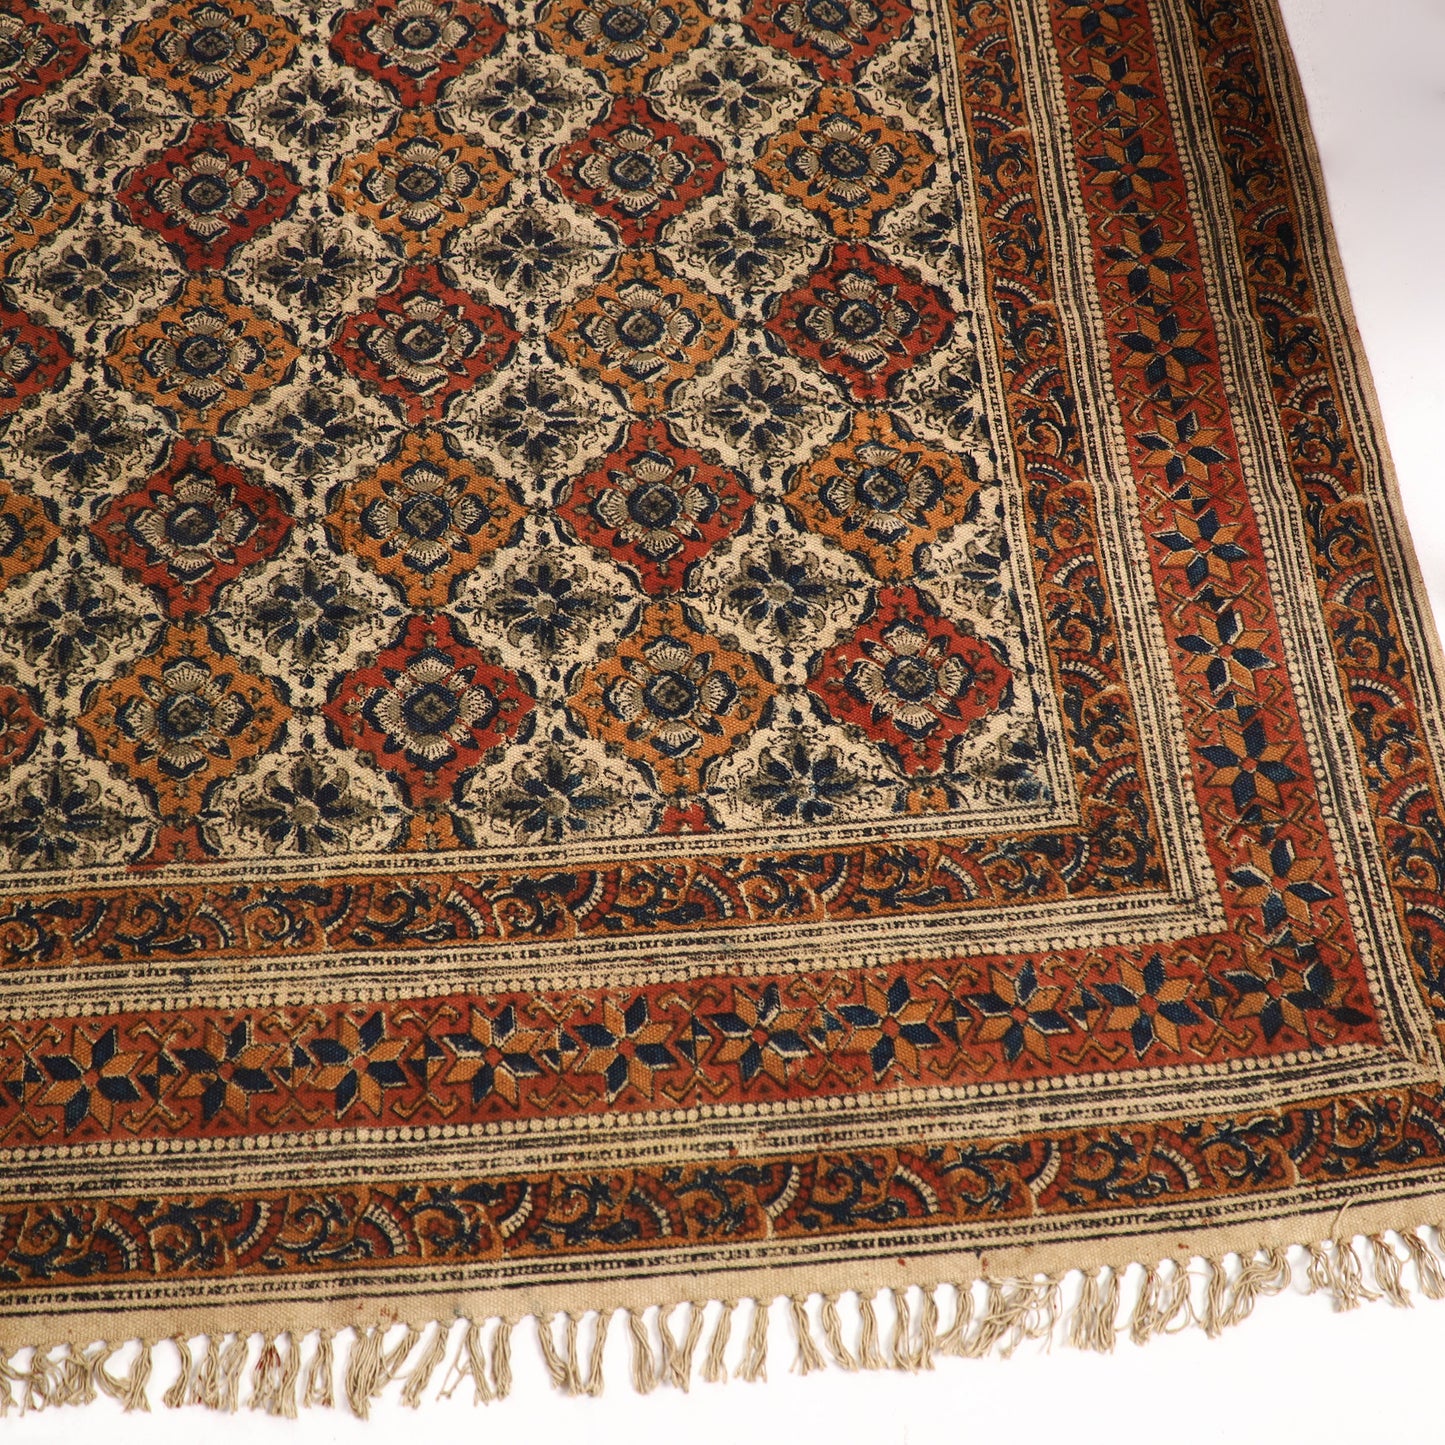 Warangal Weave Kalamkari Block Printed Cotton Durrie / Carpet / Rug (97 x 60 in)